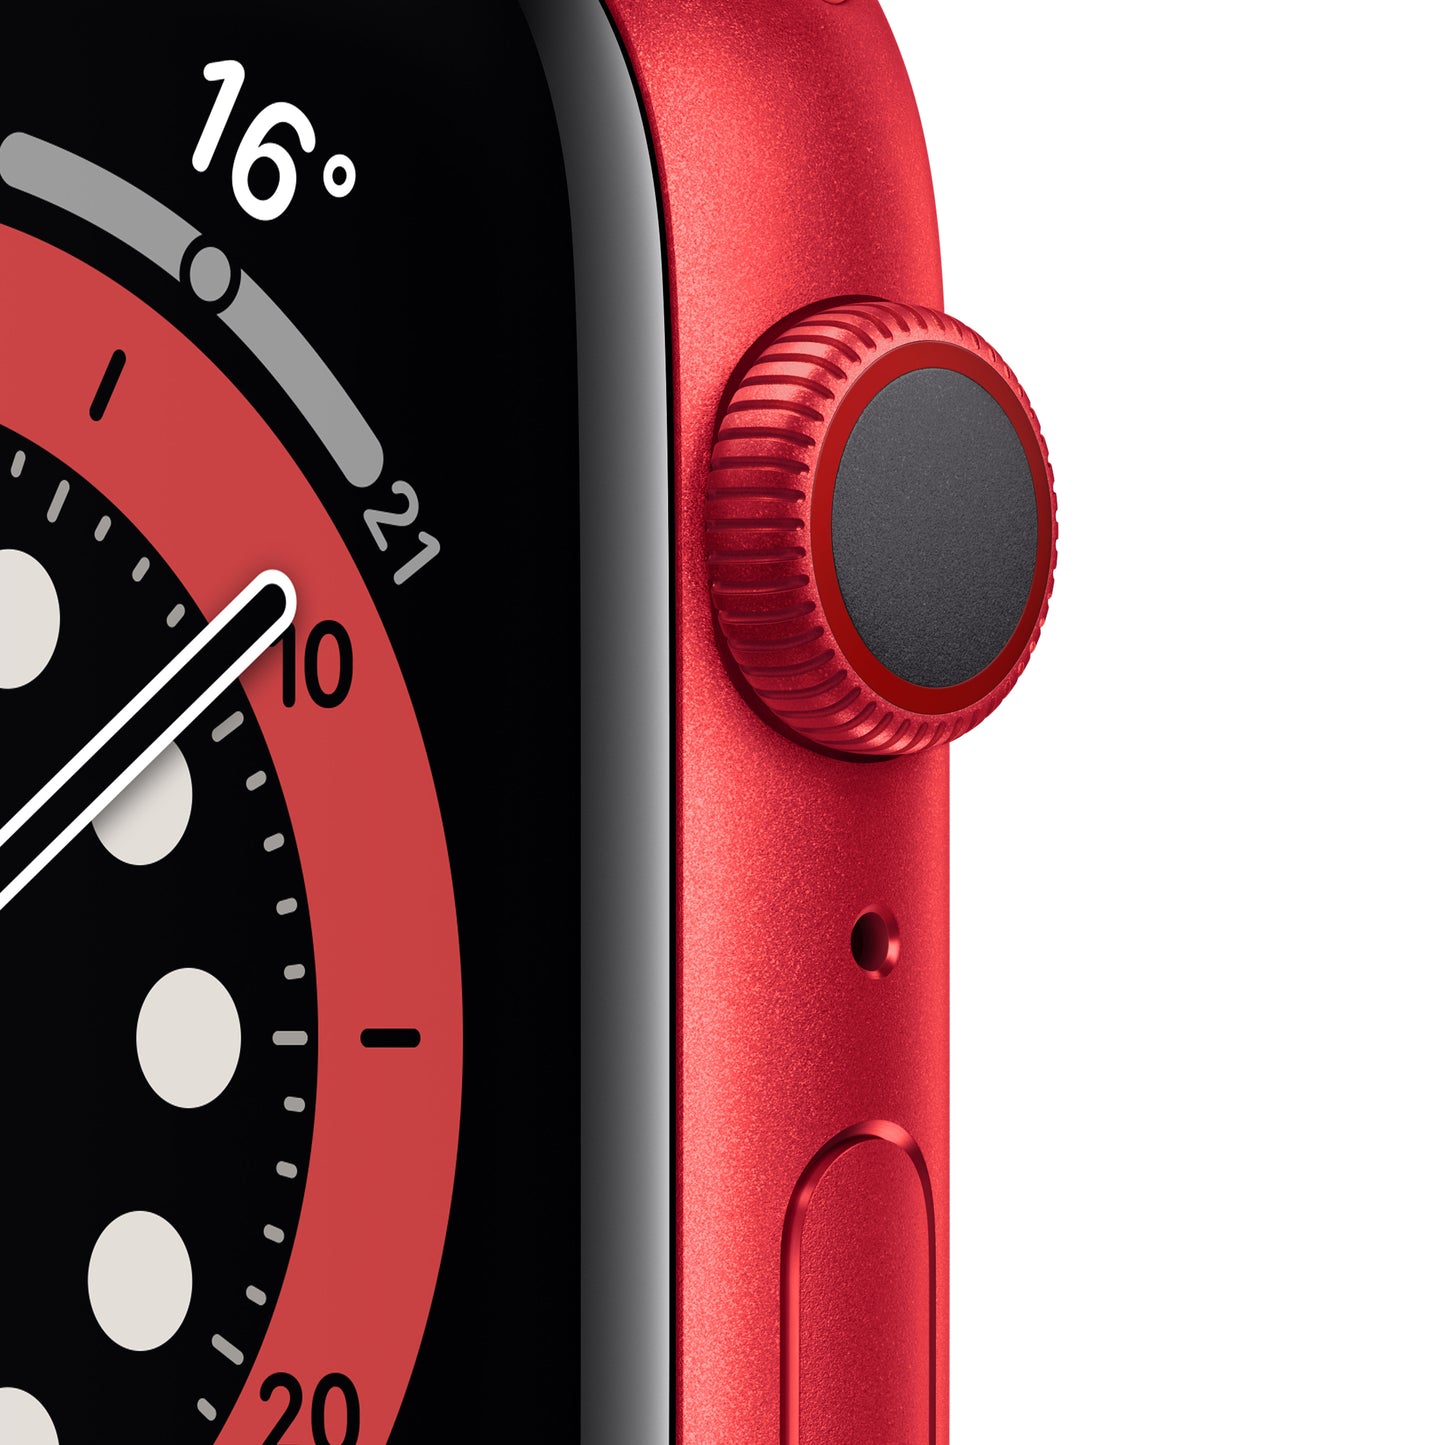 Apple Watch Series 6 (GPS + Cellular) - Caja de aluminio (PRODUCT)RED de 44 mm - Correa deportiva (PRODUCT)RED - Talla única